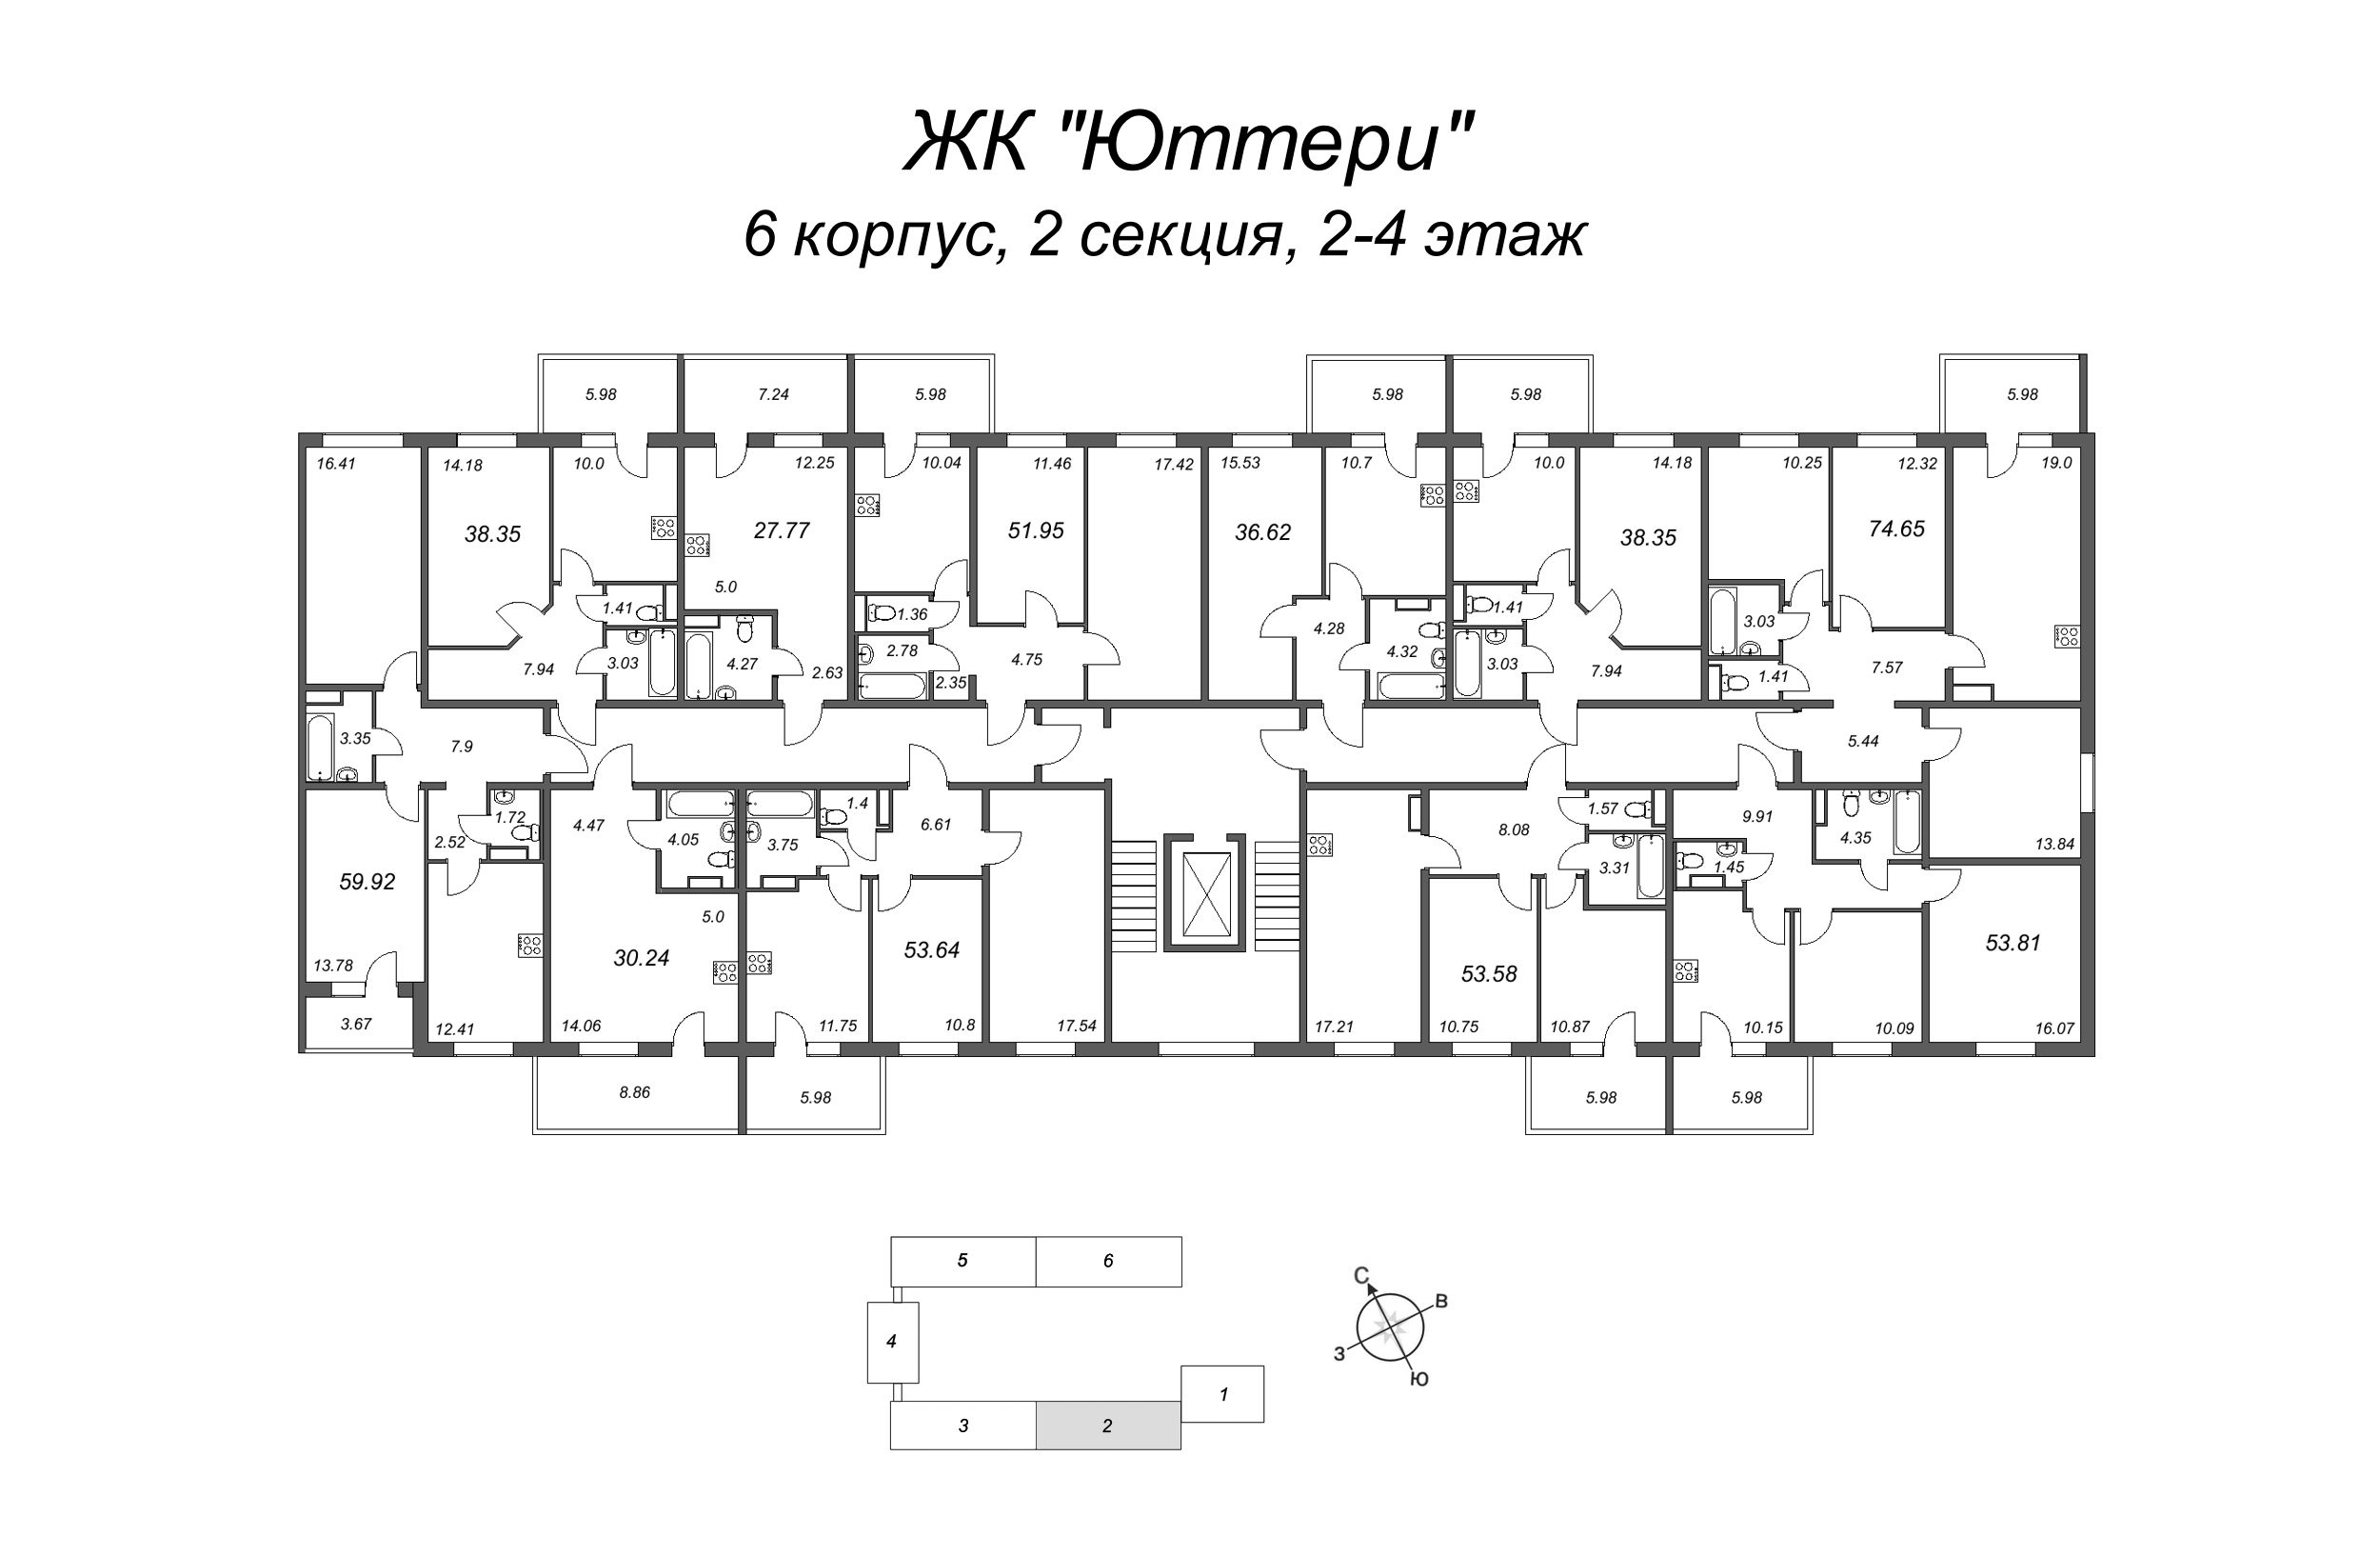 4-комнатная (Евро) квартира, 72.86 м² в ЖК "Юттери" - планировка этажа